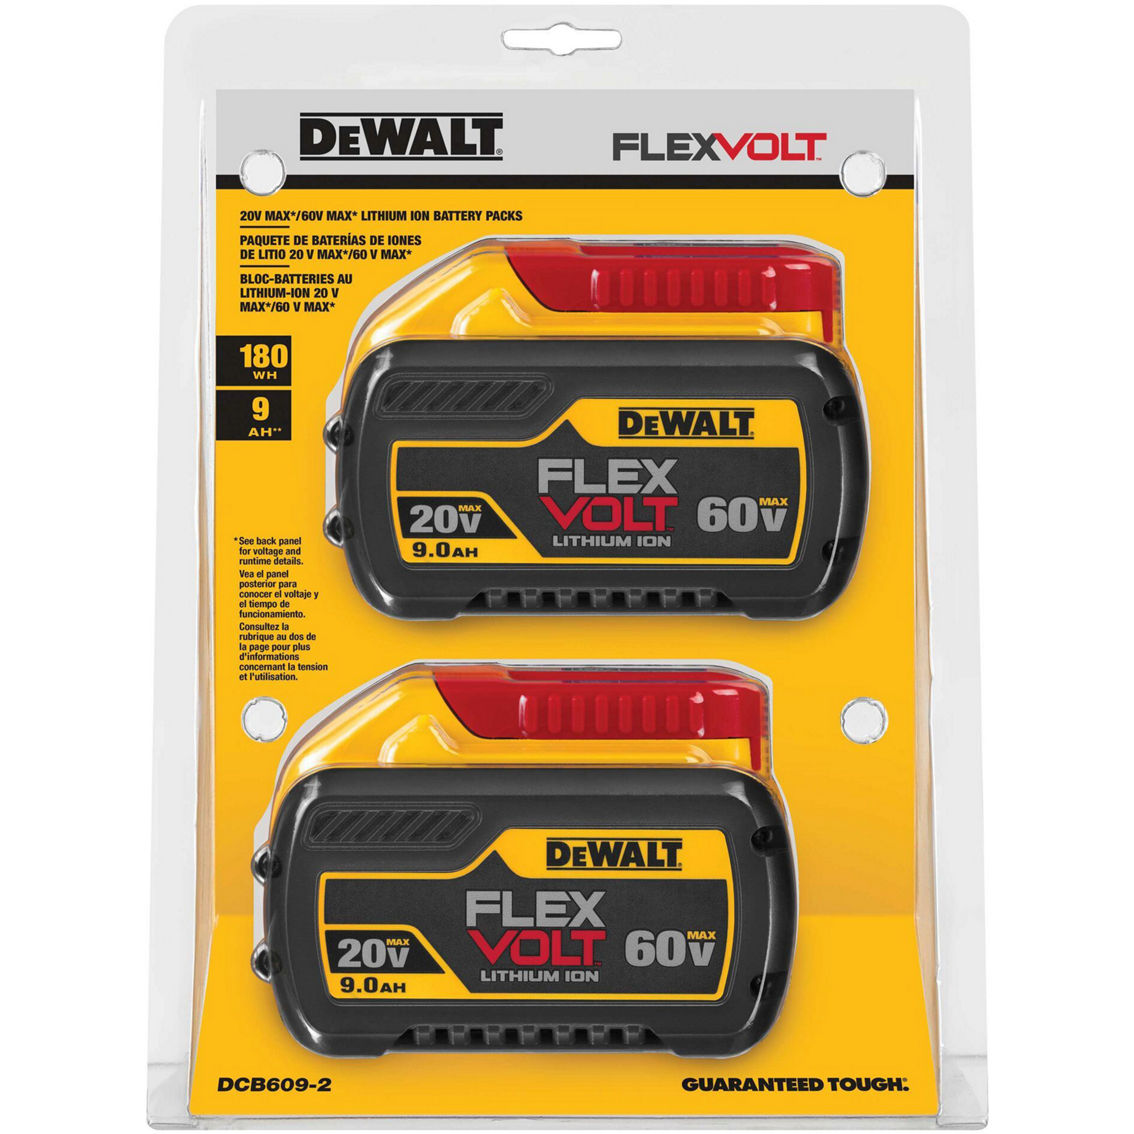 DeWalt Flexvolt 20V/60V 9.0Ah Max Batteries, 2 pk. - Image 2 of 2